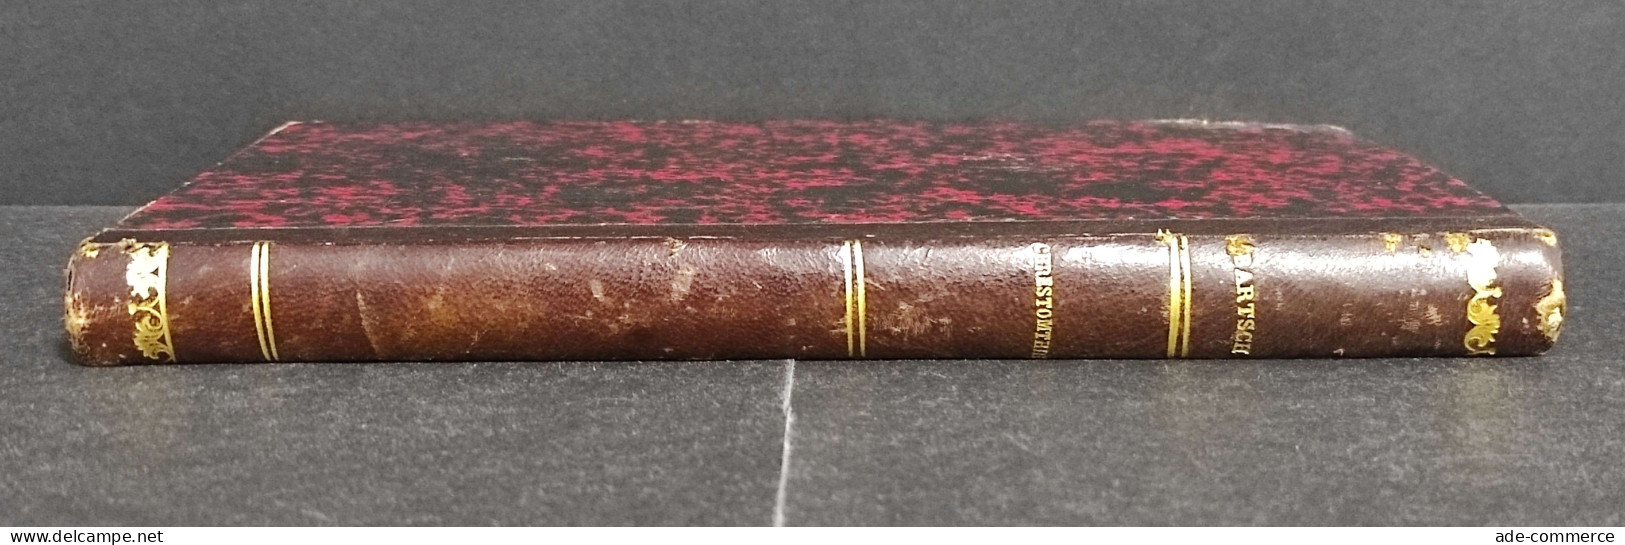 Chrestomathie Provencale - K. Bartsch - Ed. Friderichs - 1880 - Libri Antichi